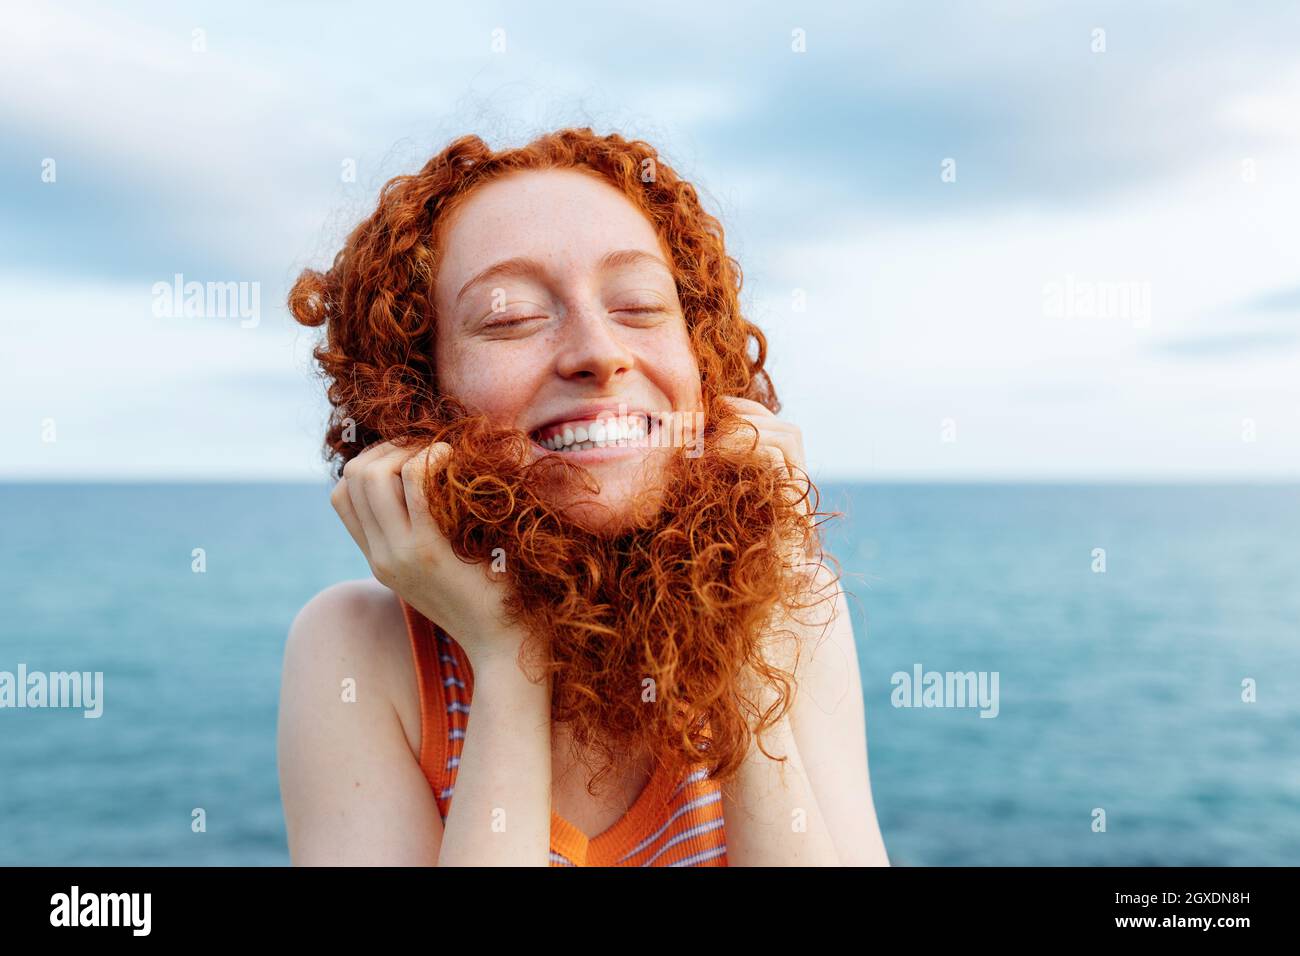 Joyeuse jeune femme à tête rousse faisant une pose puéril avec des cheveux bouclés tout en profitant de la liberté sur la mer avec les yeux fermés Banque D'Images